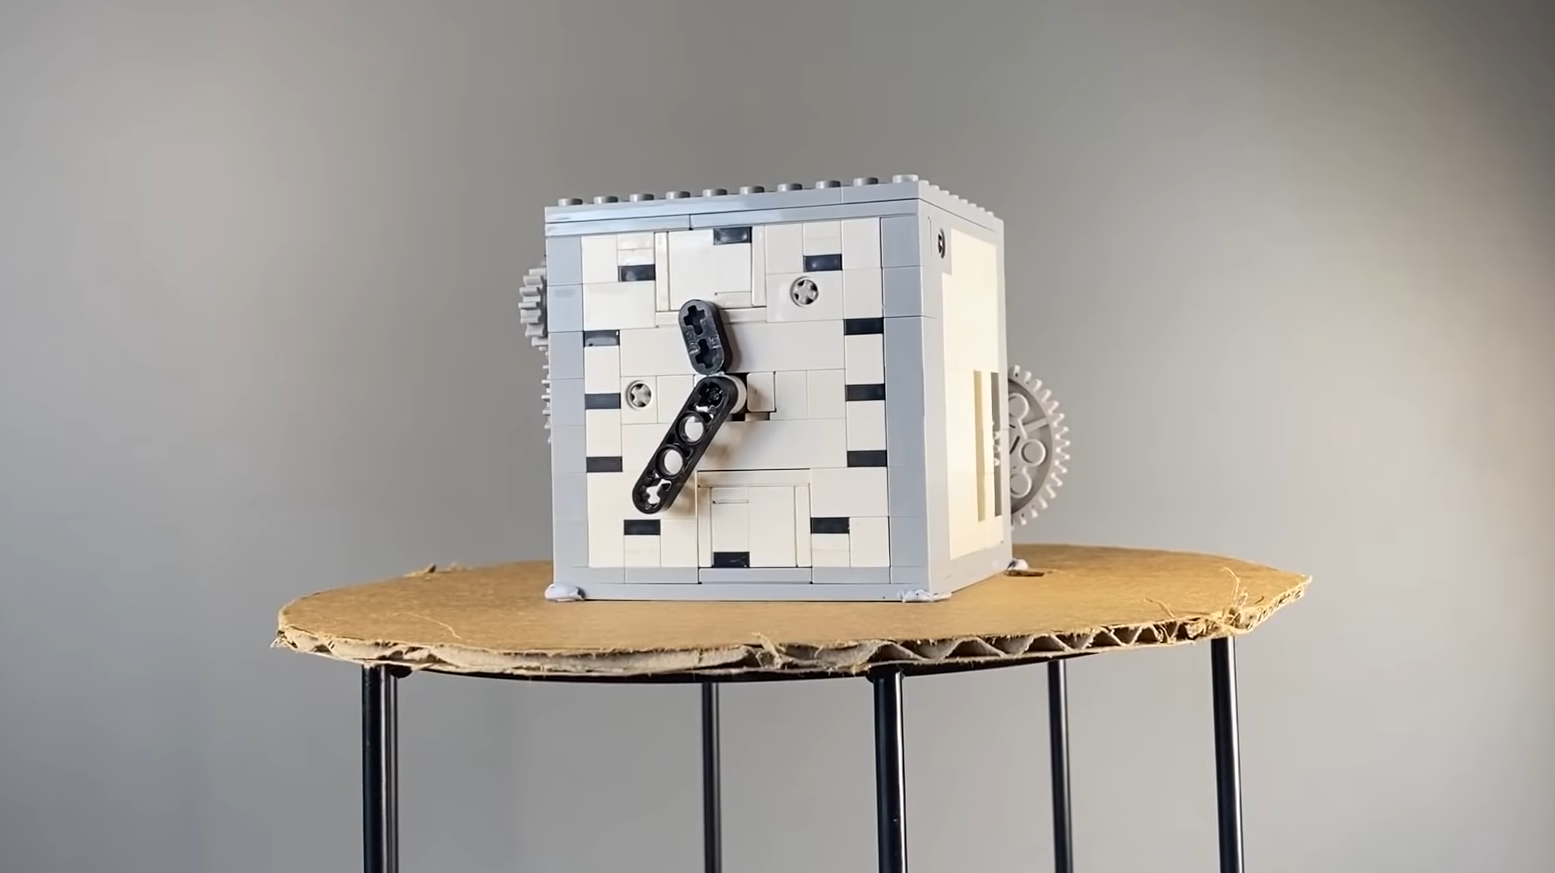 Building Pendulum Clock Of Lego |